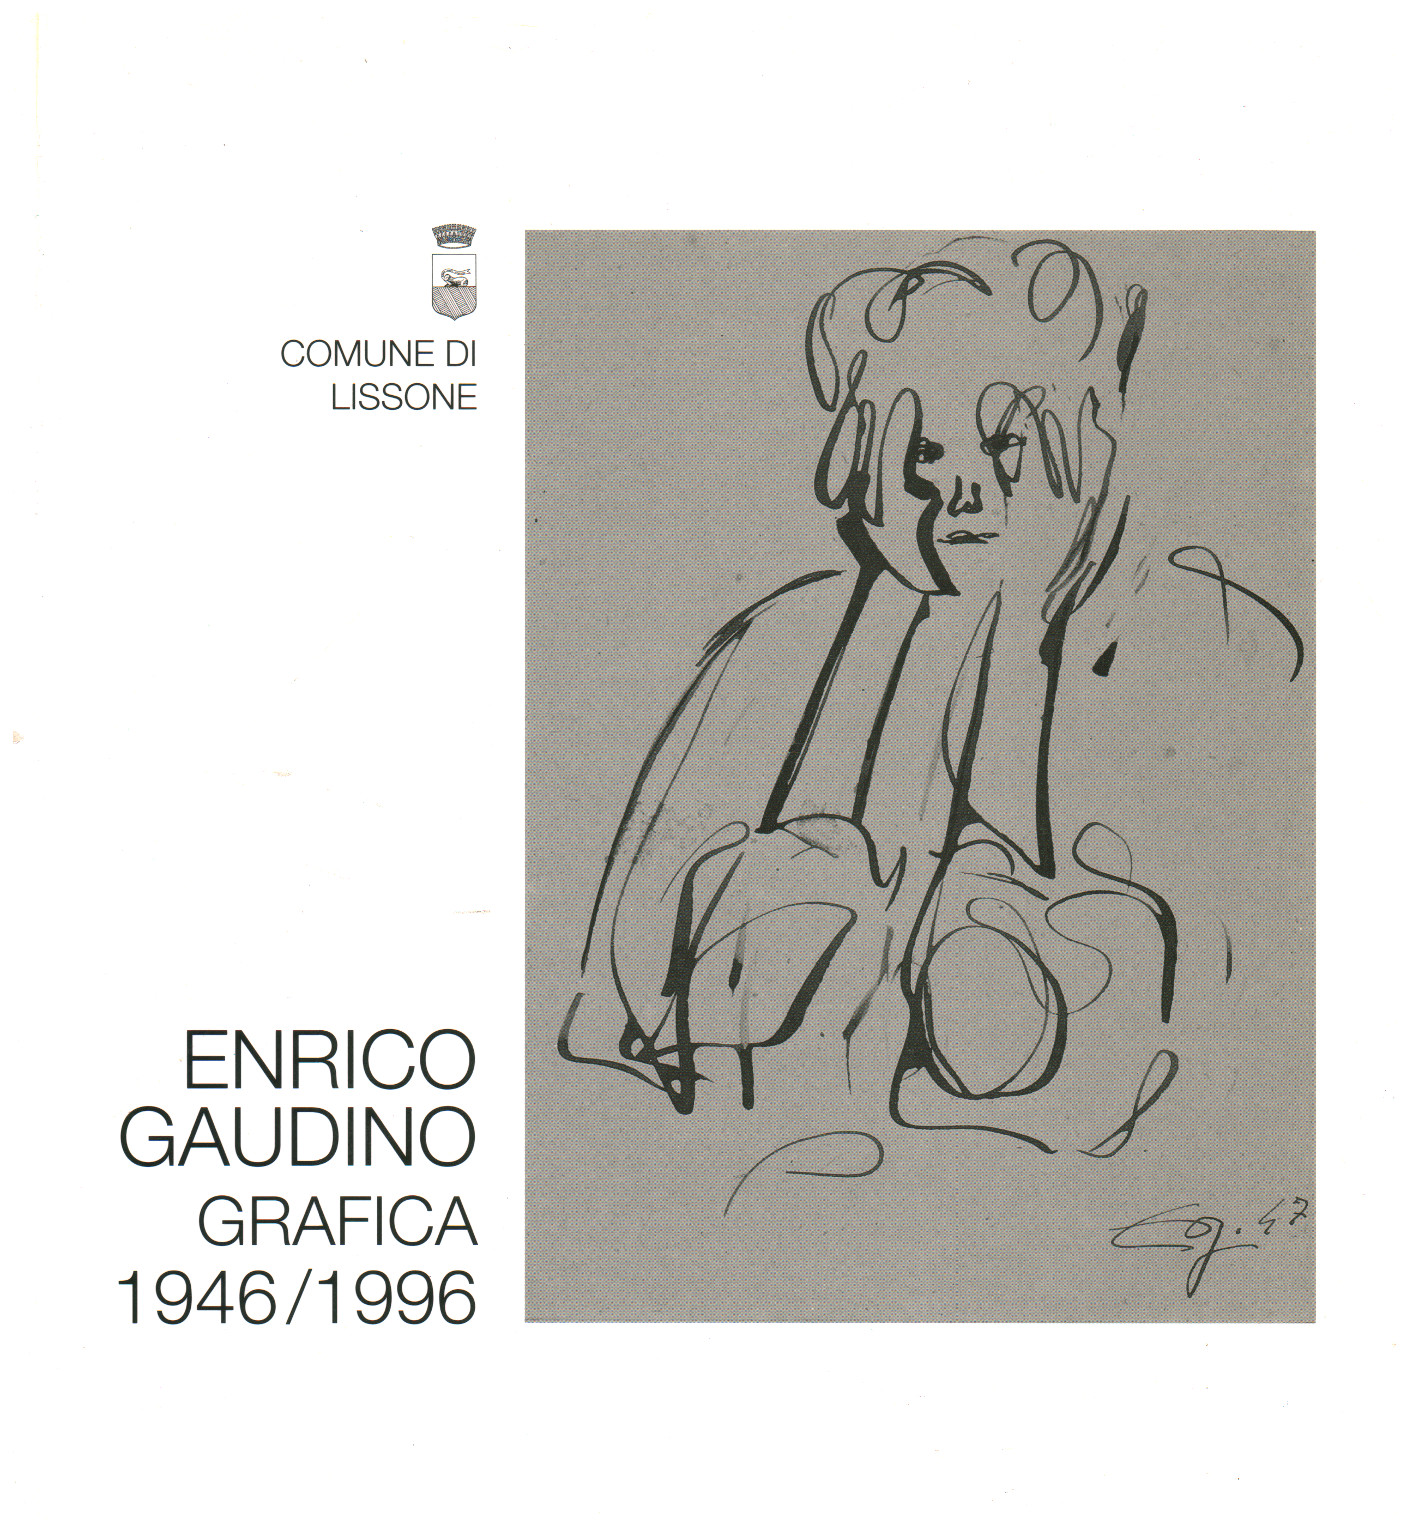 Die grafik von Heinrich Gaudino 1946/1996, AA.VV